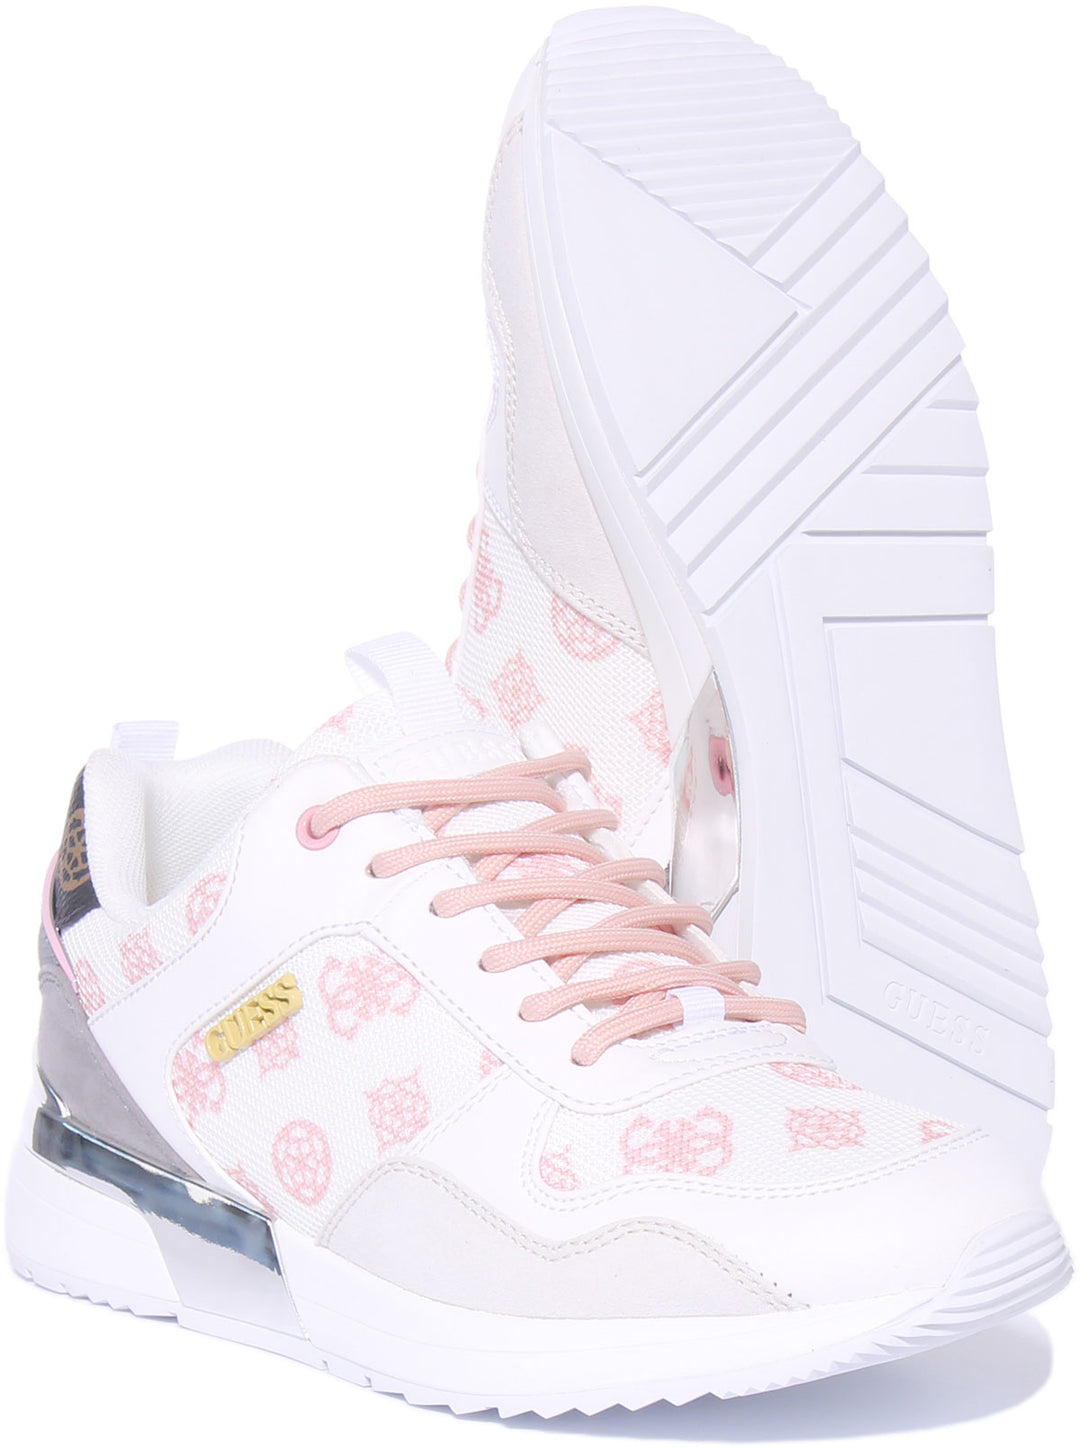 Guess Zapatillas de deporte inspiradas en el logo 4G de mujer en blanco rosa